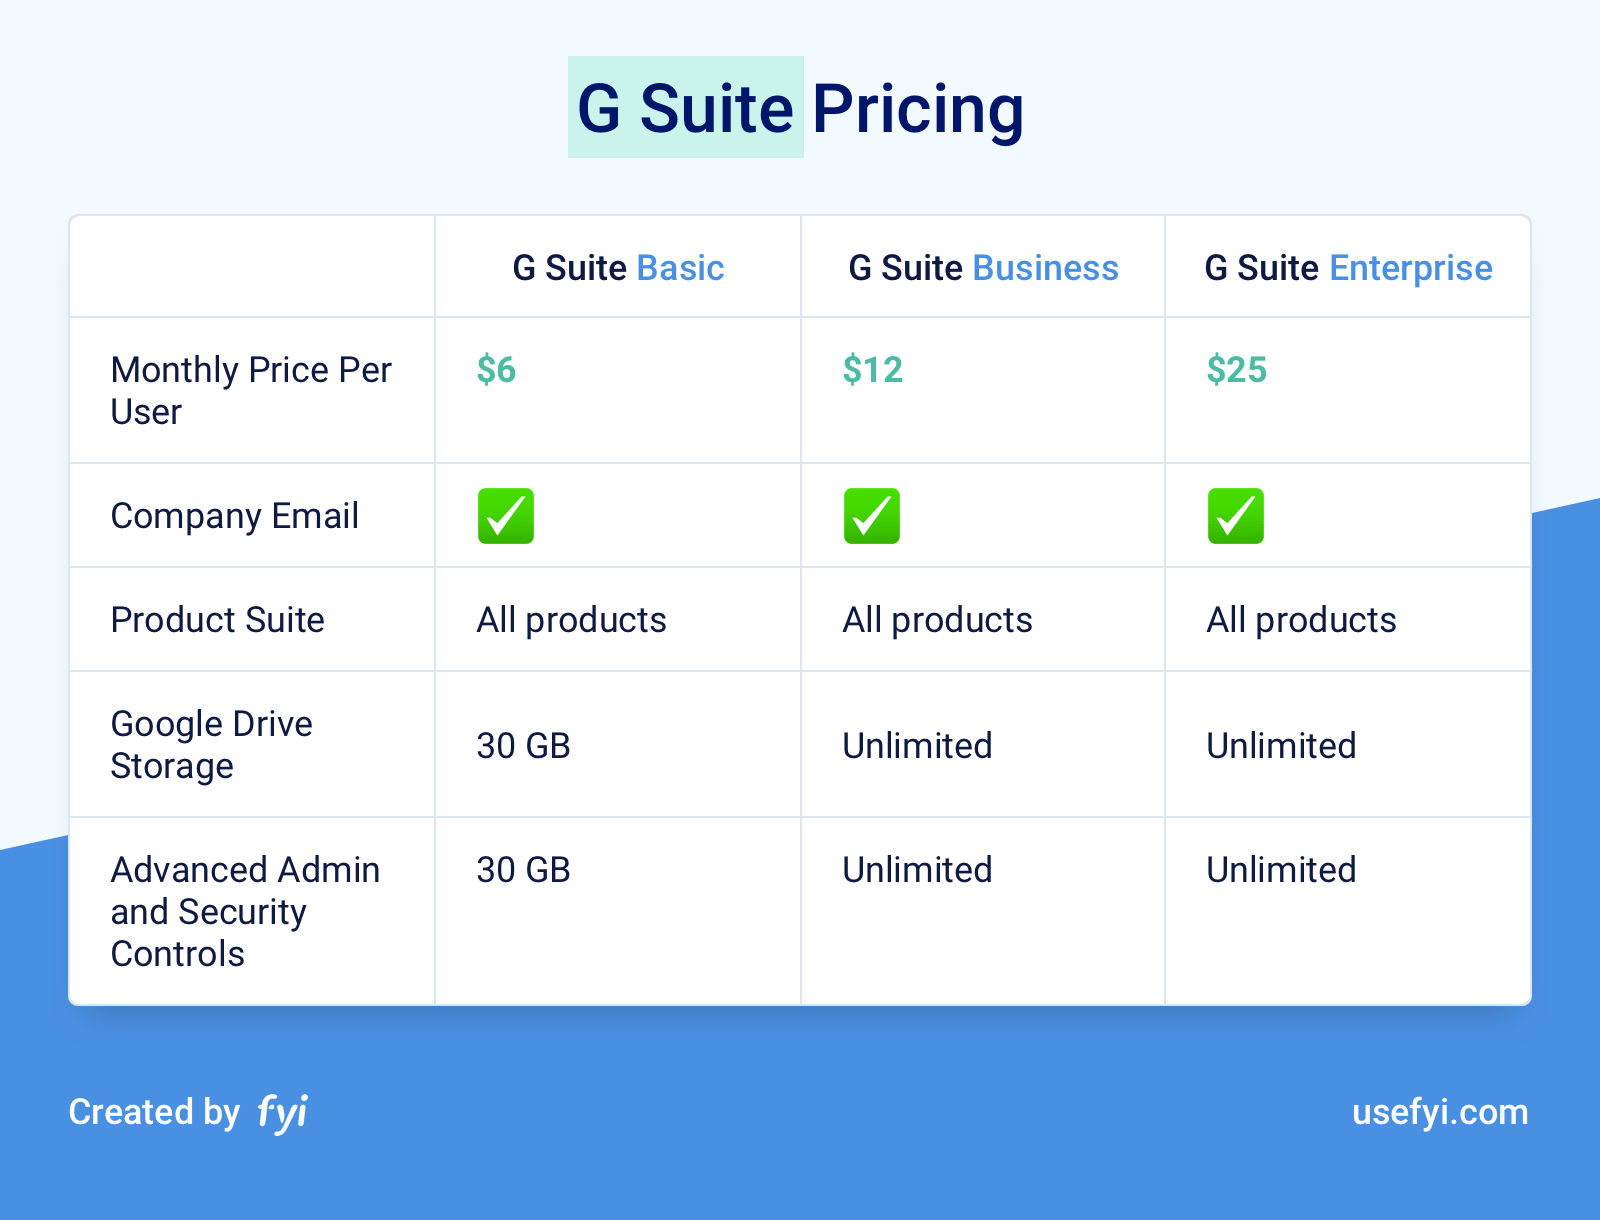 Plan G Premium Rate Comparison Chart